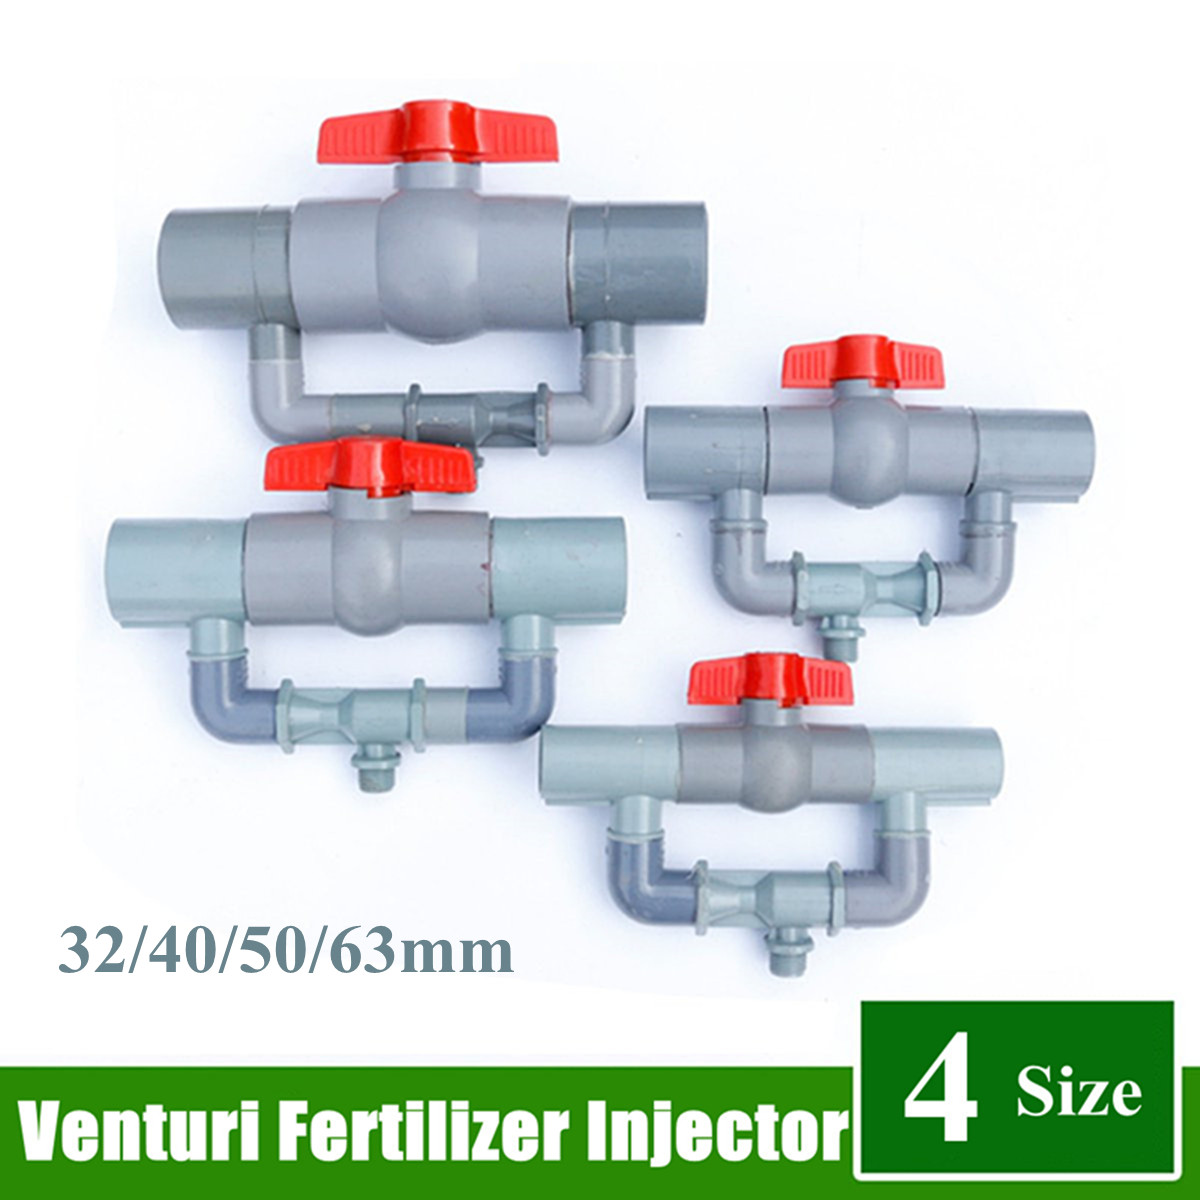 3/4" 1" Irrigation Venturi Fertilizer Mixer Injector Garden Water Device Tube IG 